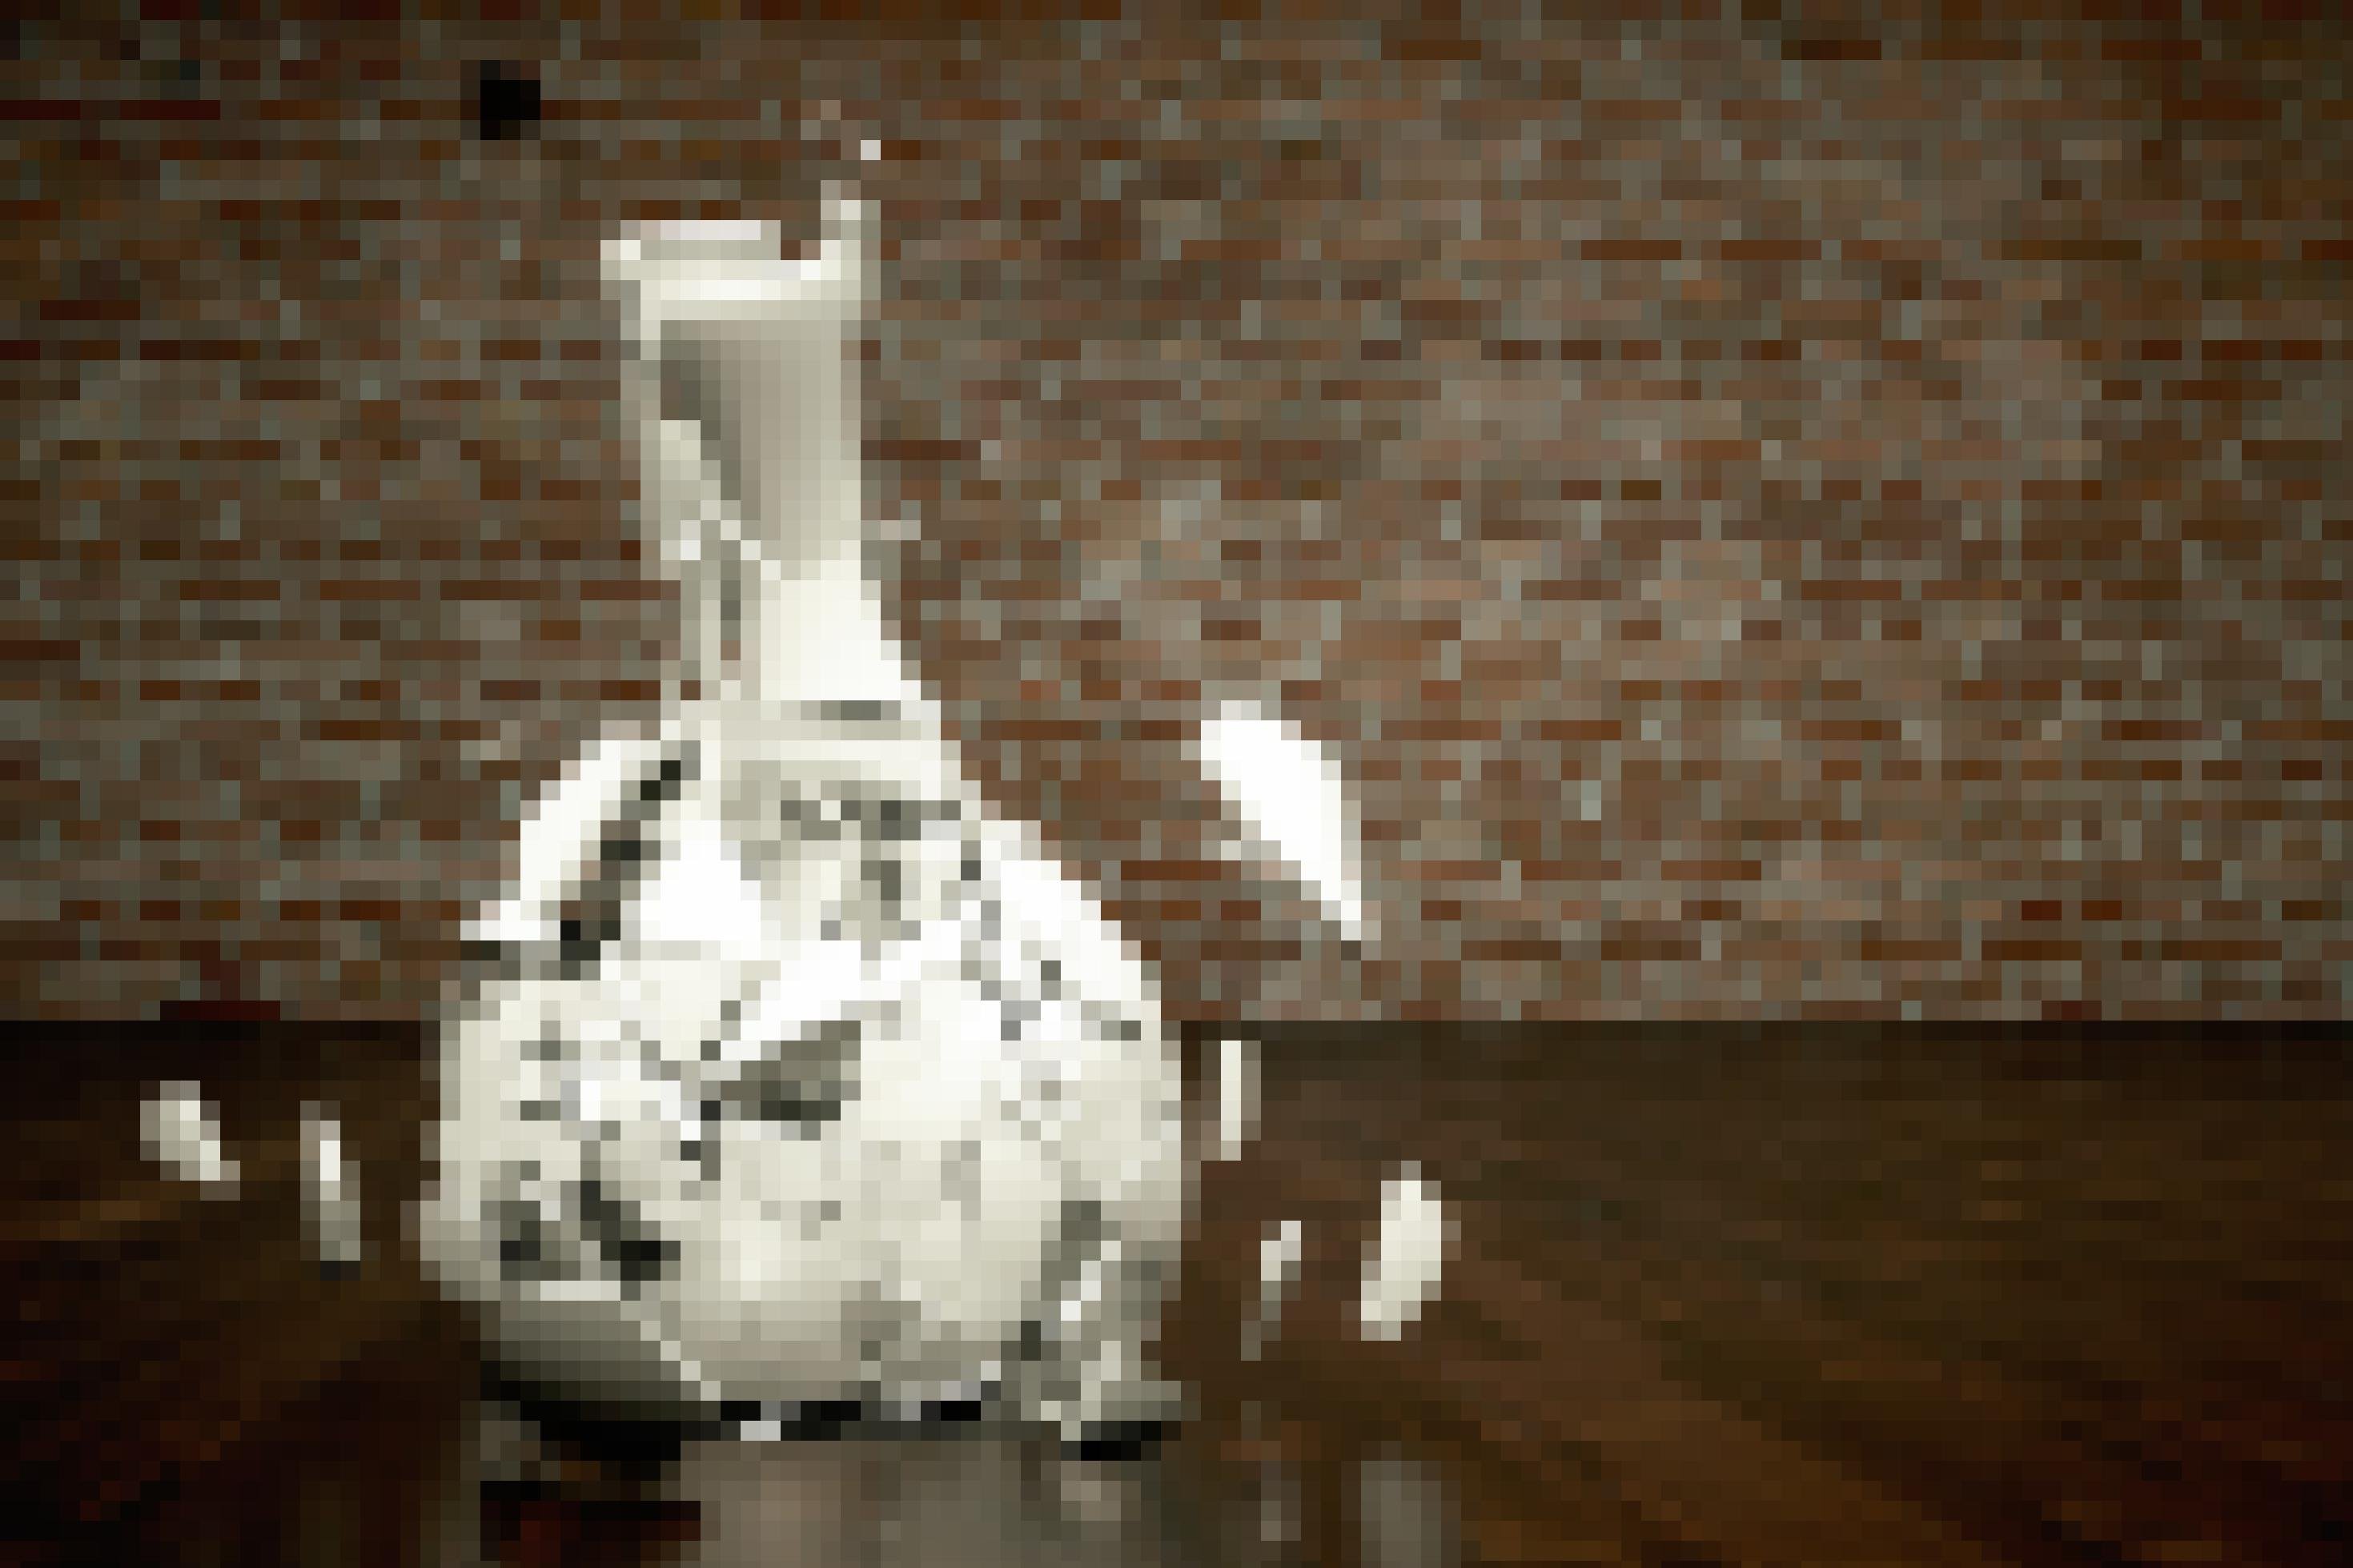 Zu sehen ist eine Vase aus weißer Keramik, die auf einen dunklen Holzfußboden prallt und dabei in zig Bruchstücke zerbirst. Im Hintergrund eine Wand aus rötlichen Mauersteinen.